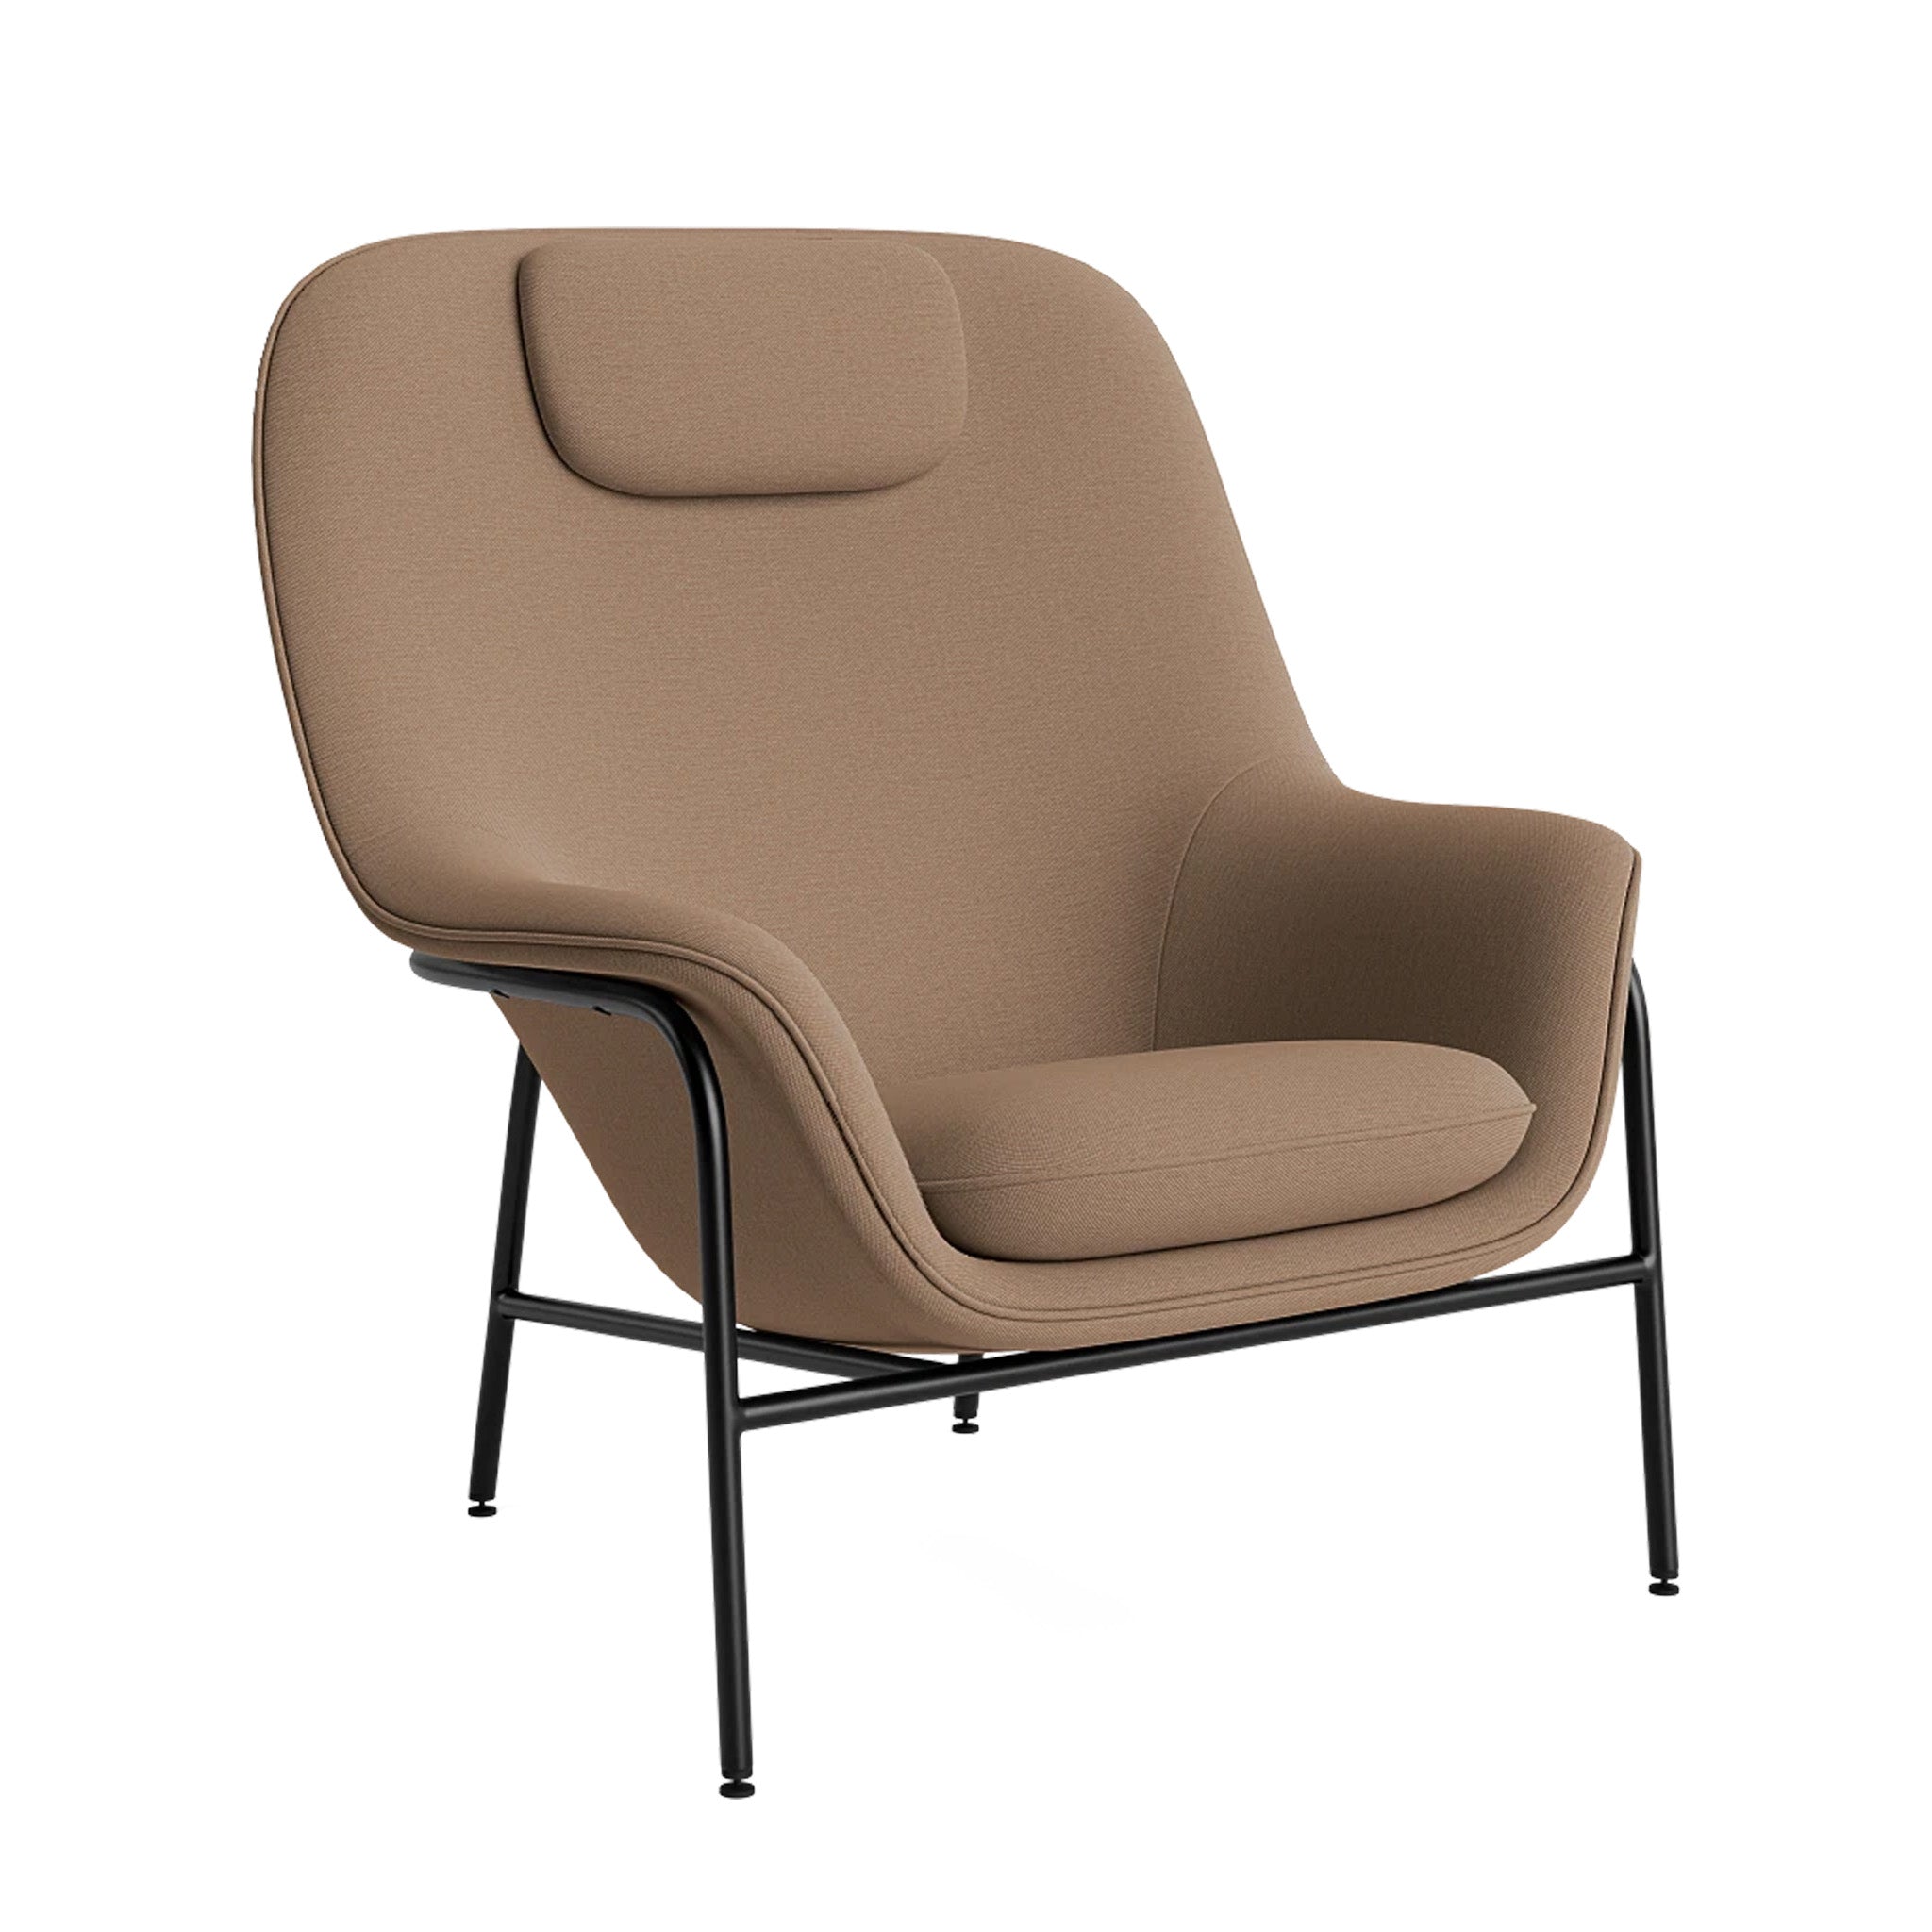 Drape Lounge Chair High by Normann Copenhagen